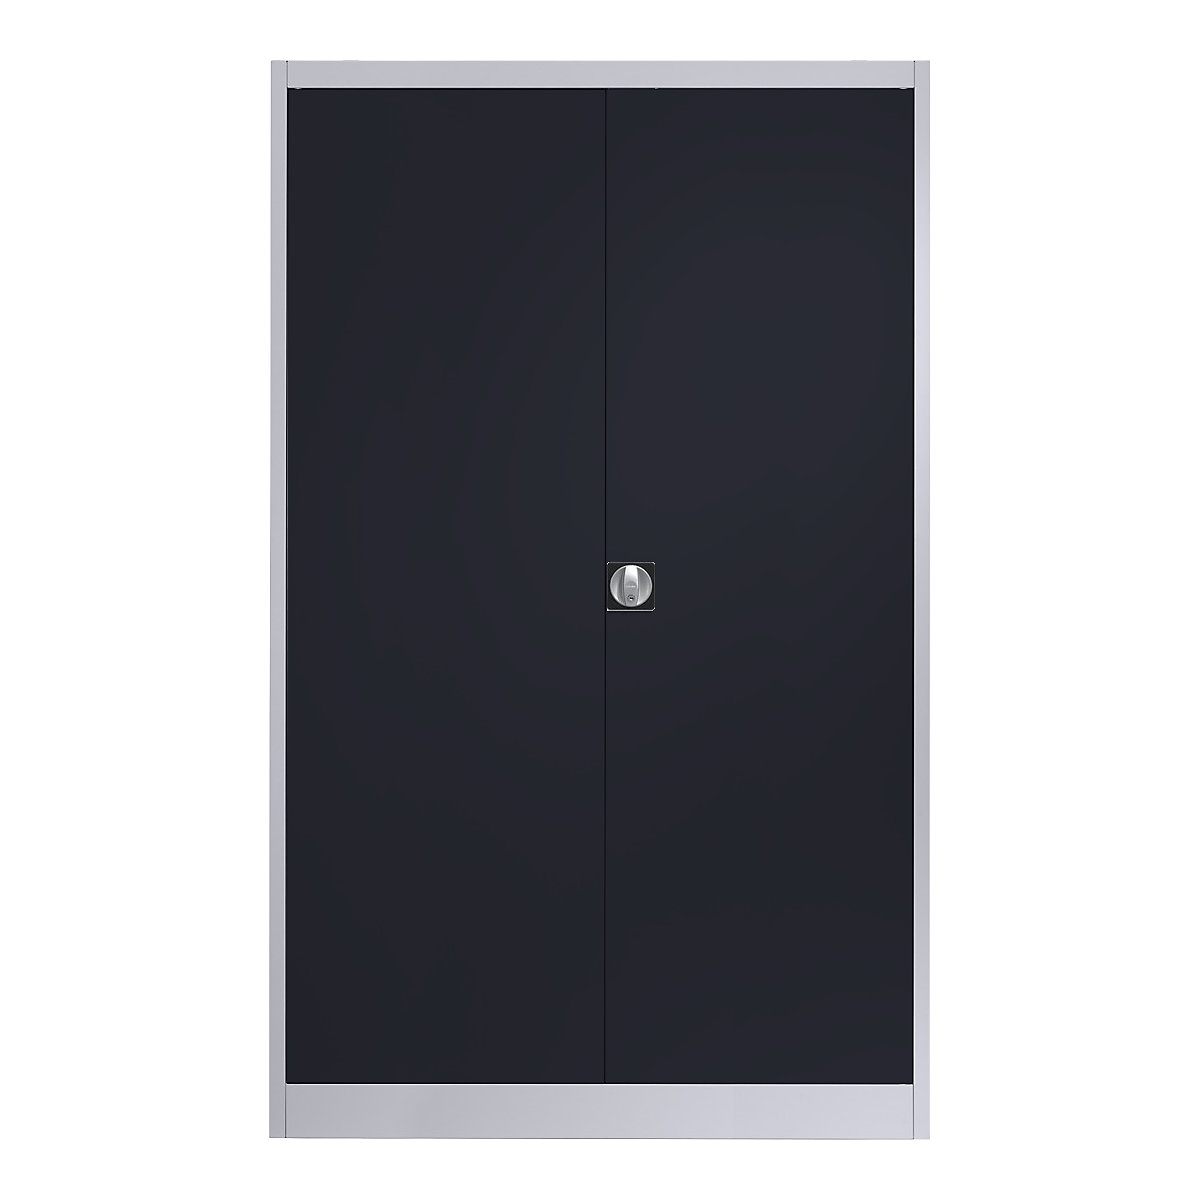 Čelični ormar s krilnim vratima – mauser, 4 police, širina 1200 mm, u bijeloj aluminij / antracit sivoj boji, vanjska dubina 600 mm-11